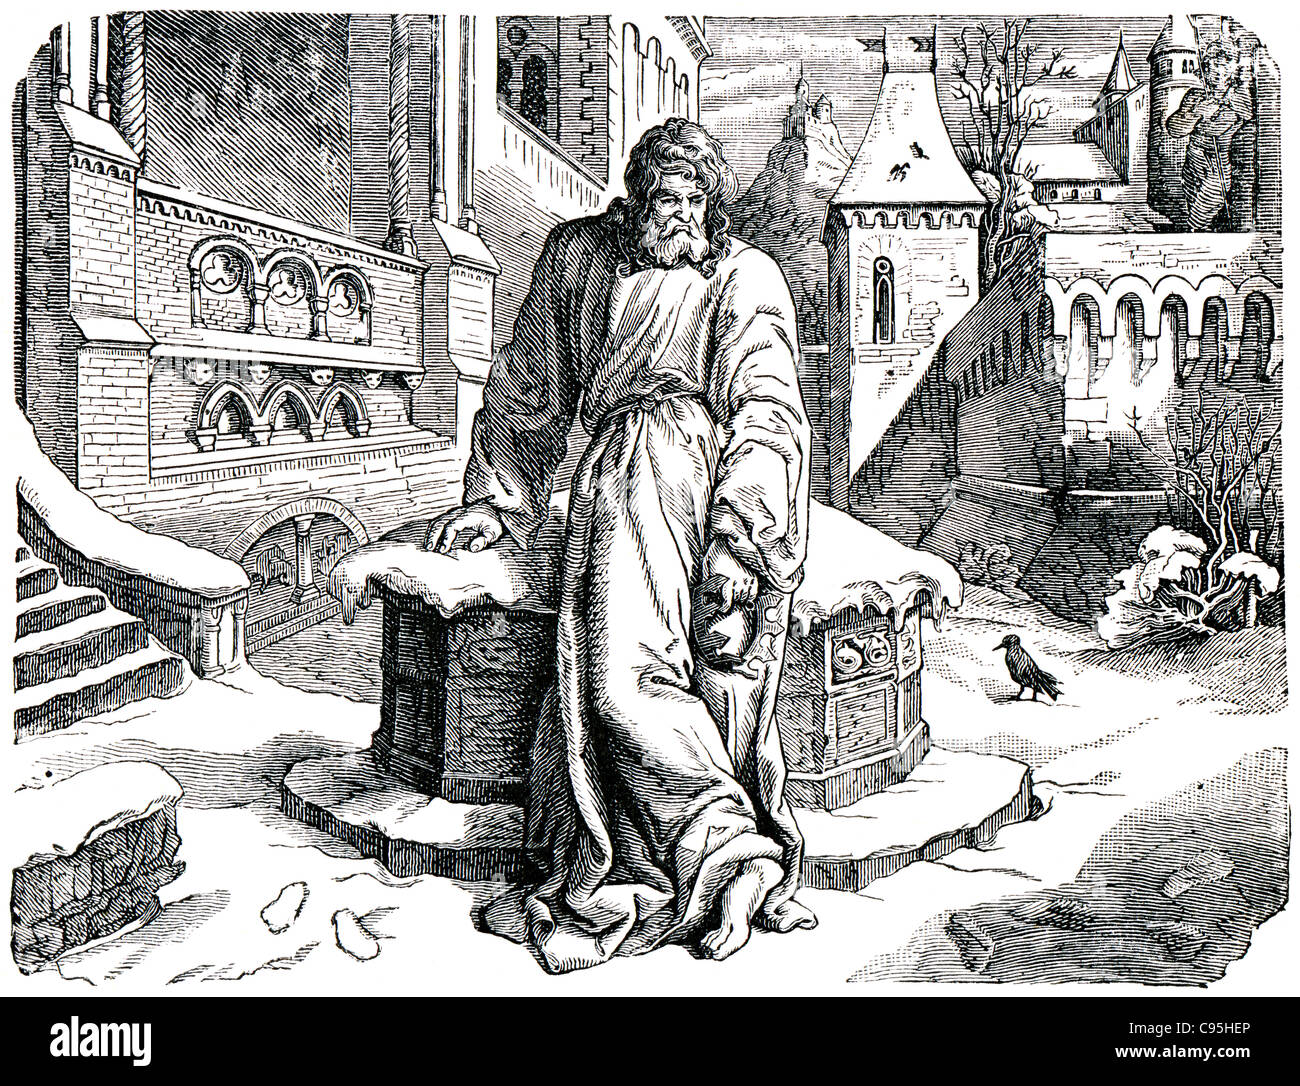 Alte Stiche. Henry IV, Heiliger römischer Kaiser zeigt. Das Buch "History of the Church", 1880 Stockfoto